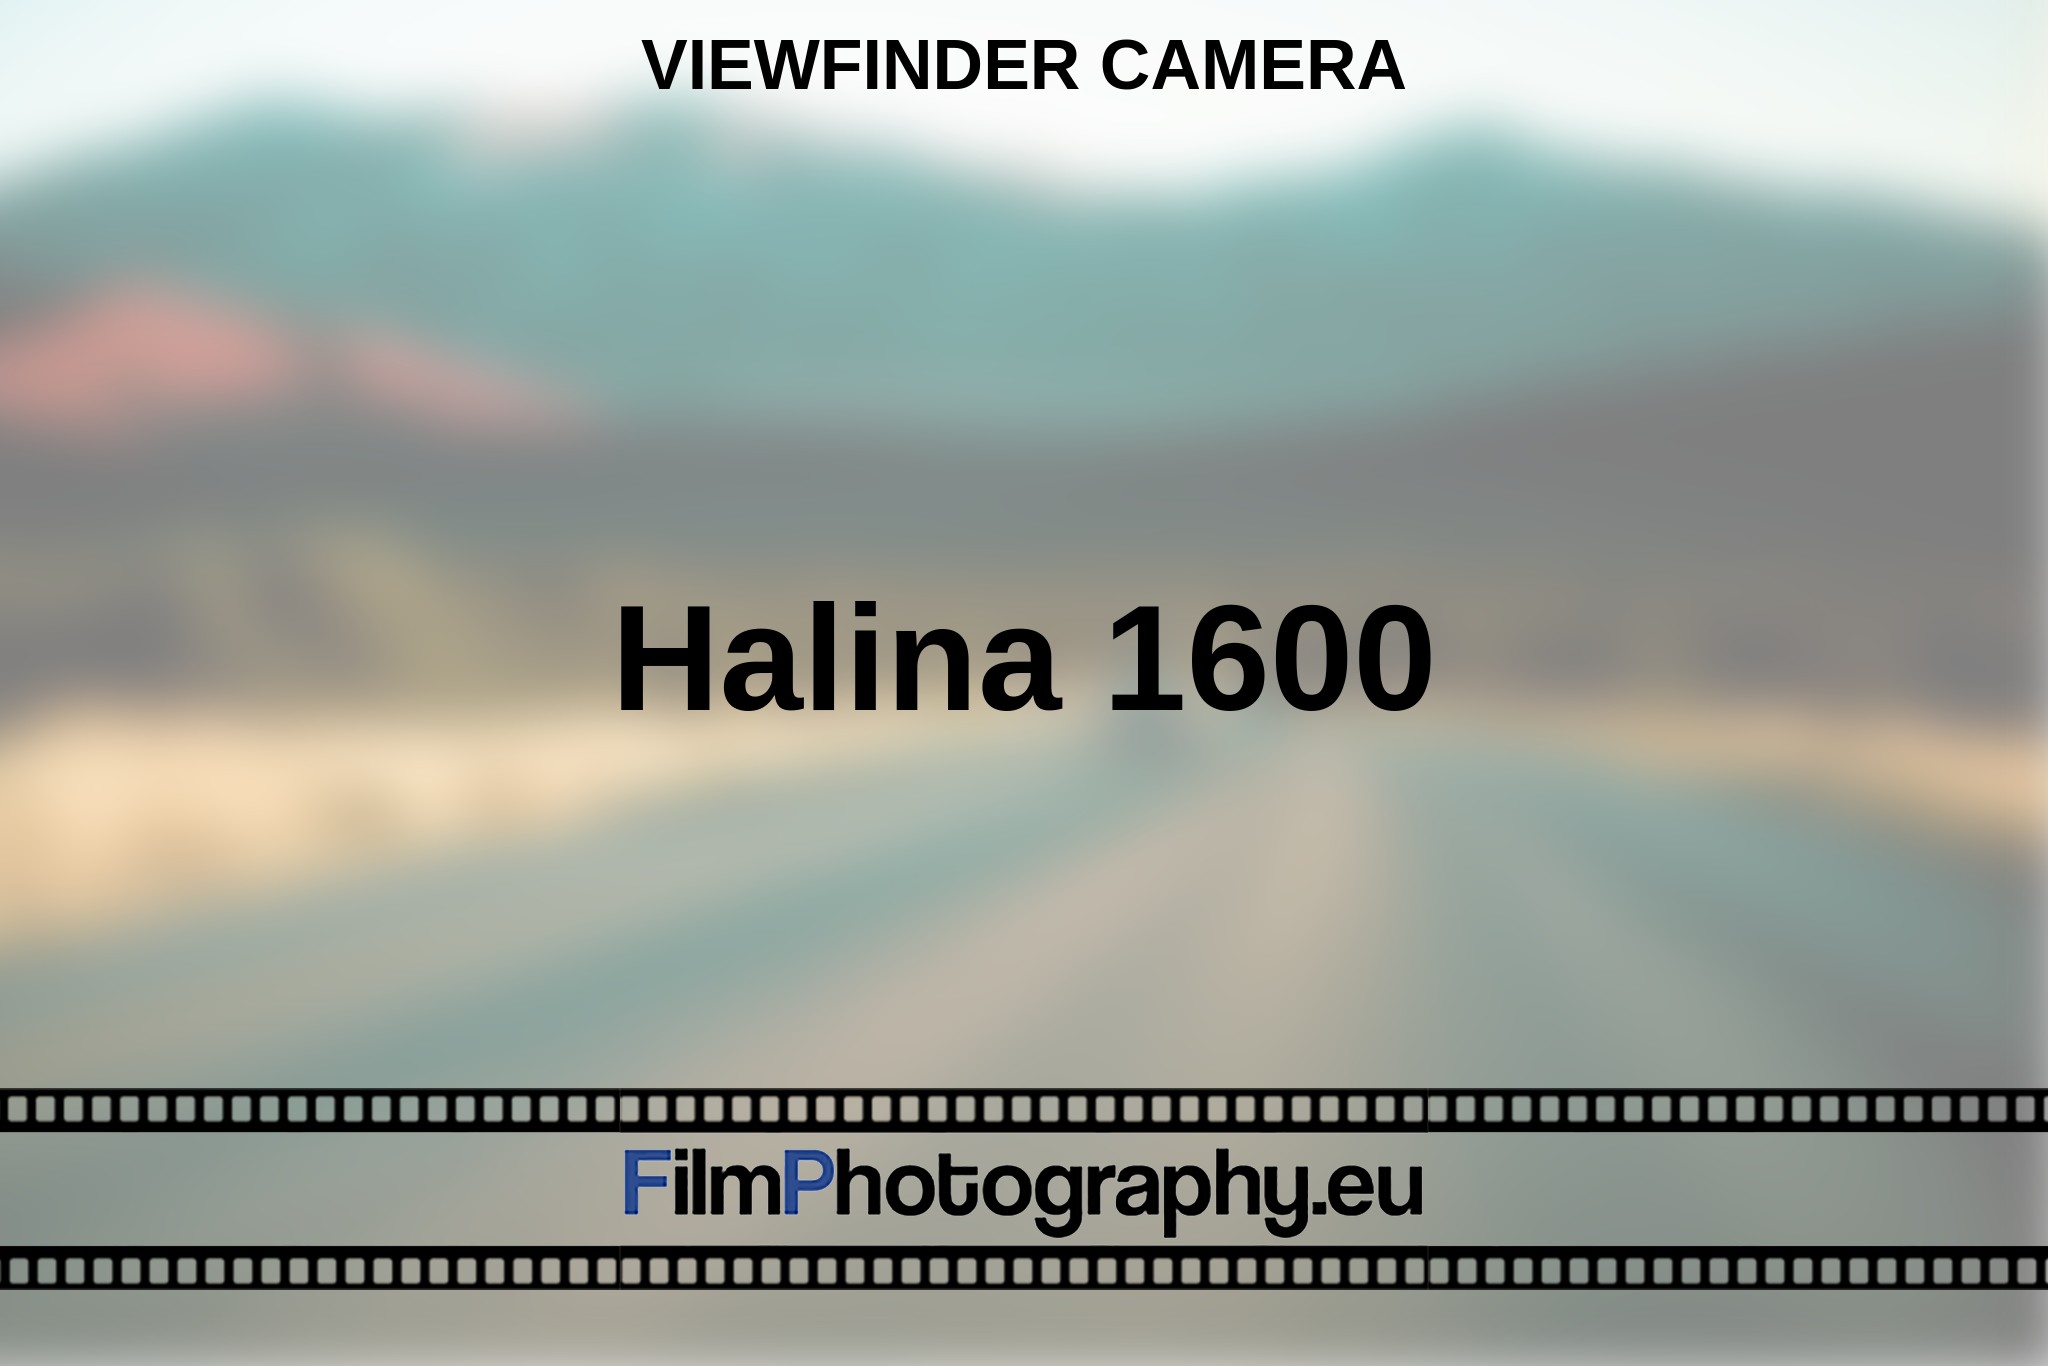 halina-1600-viewfinder-camera-en-bnv.jpg